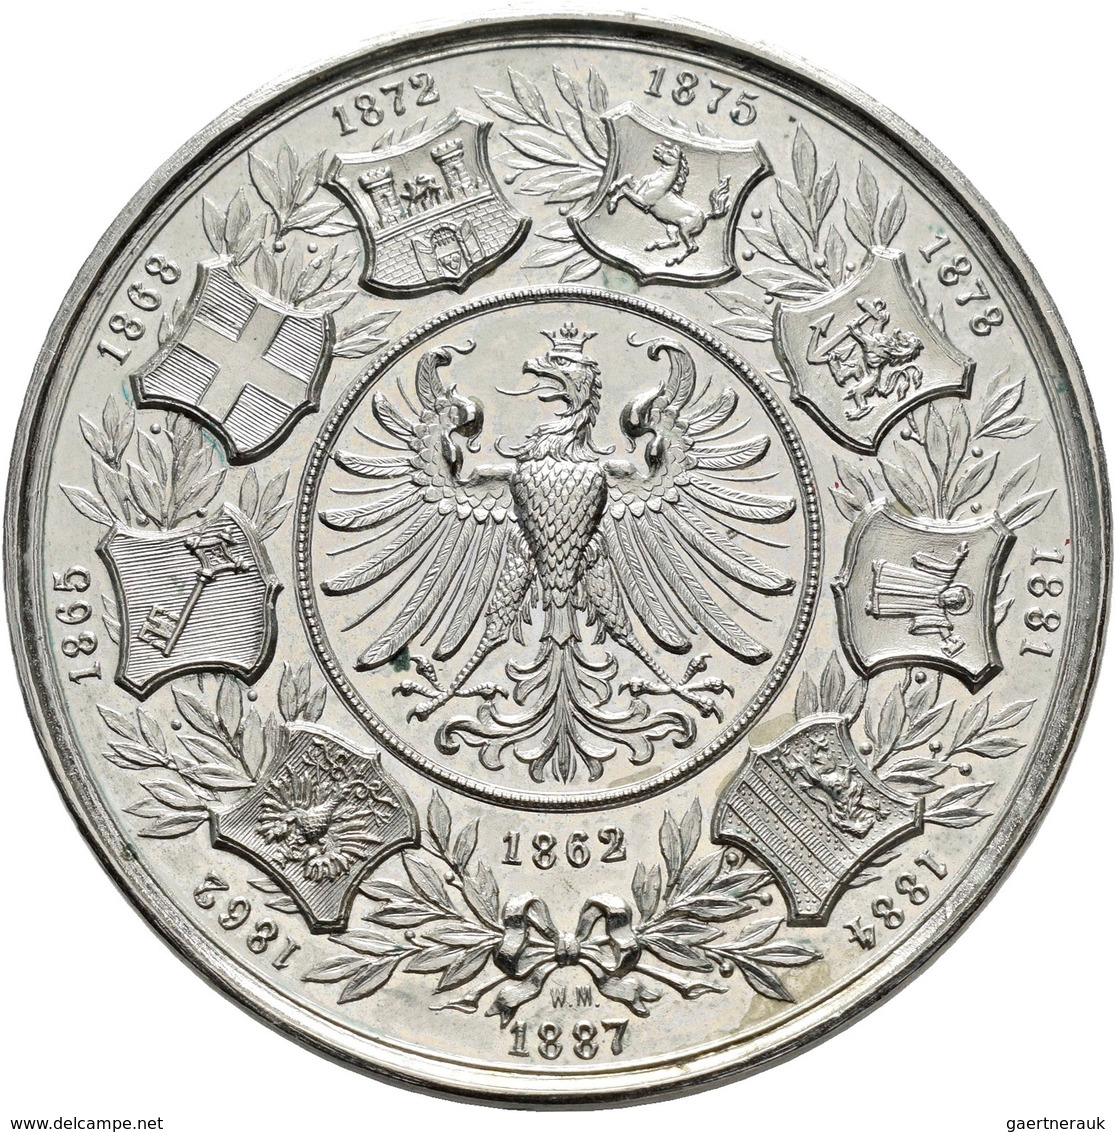 Medaillen Deutschland: 9. Deutsches Bundes-Schießen 1887 in Frankfurt a.M.: Lot 6 Medaillen; Silberm